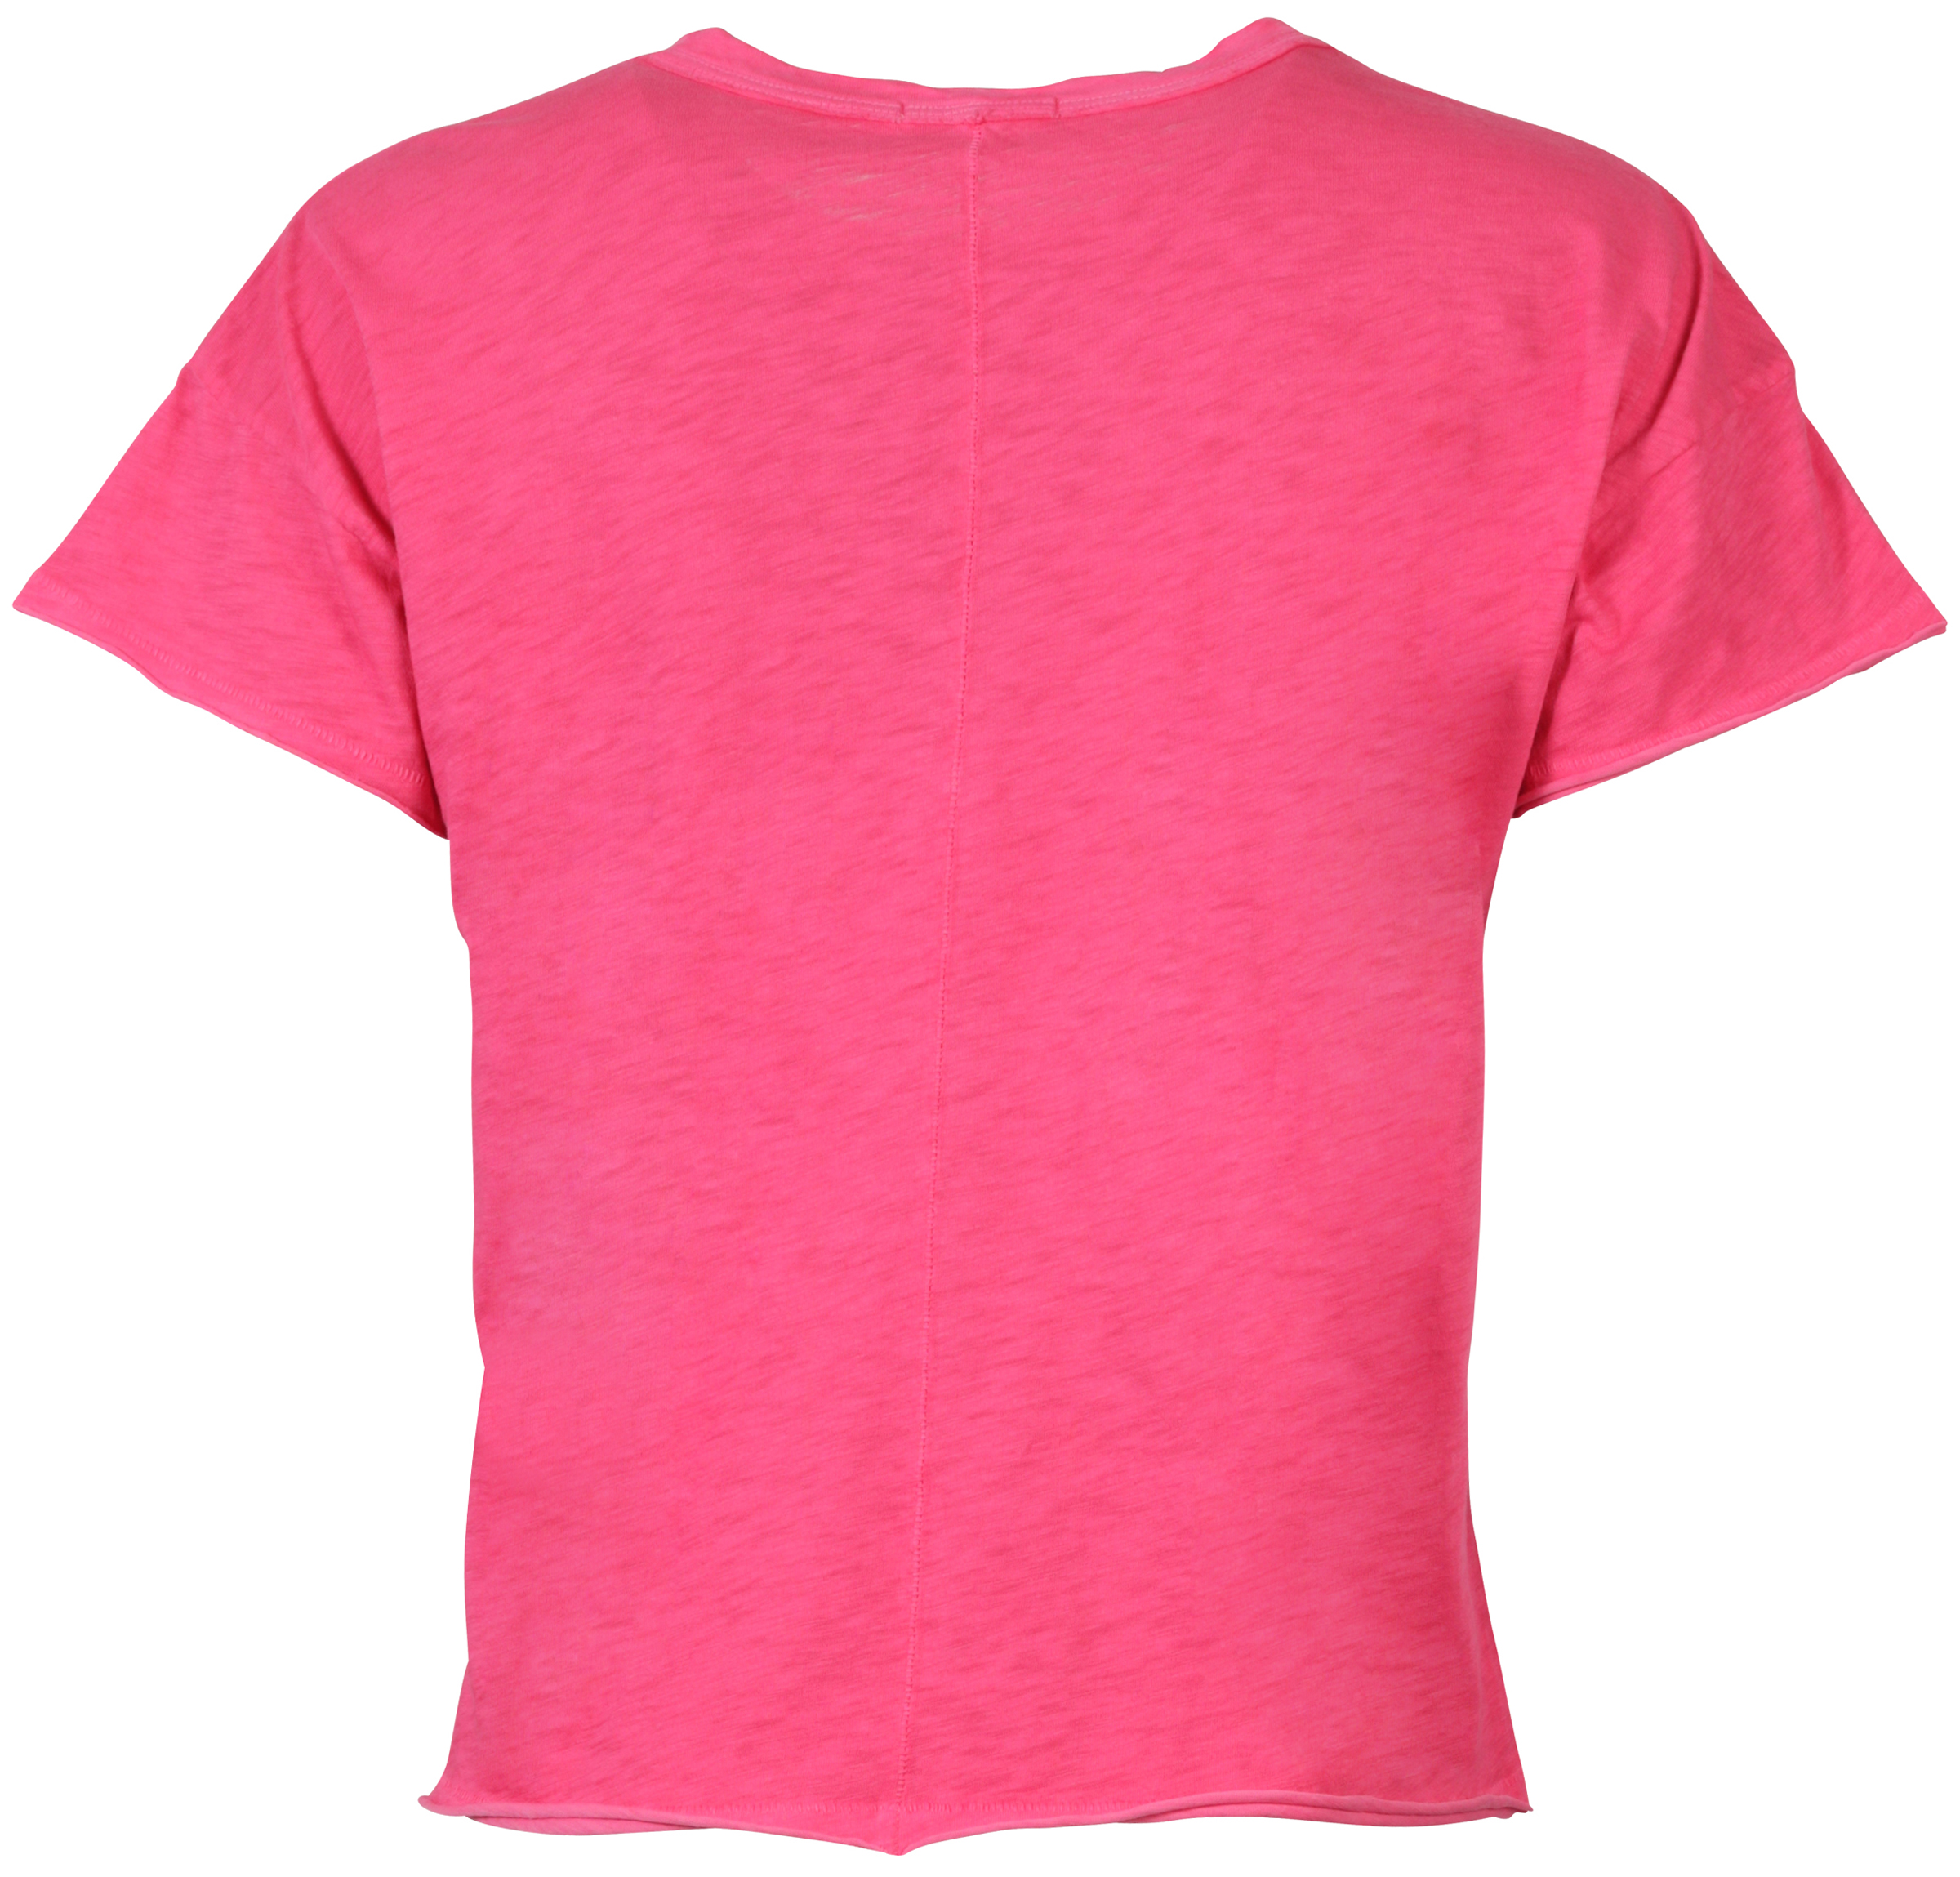 Rag & Bone T-Shirt Rundhals pink S